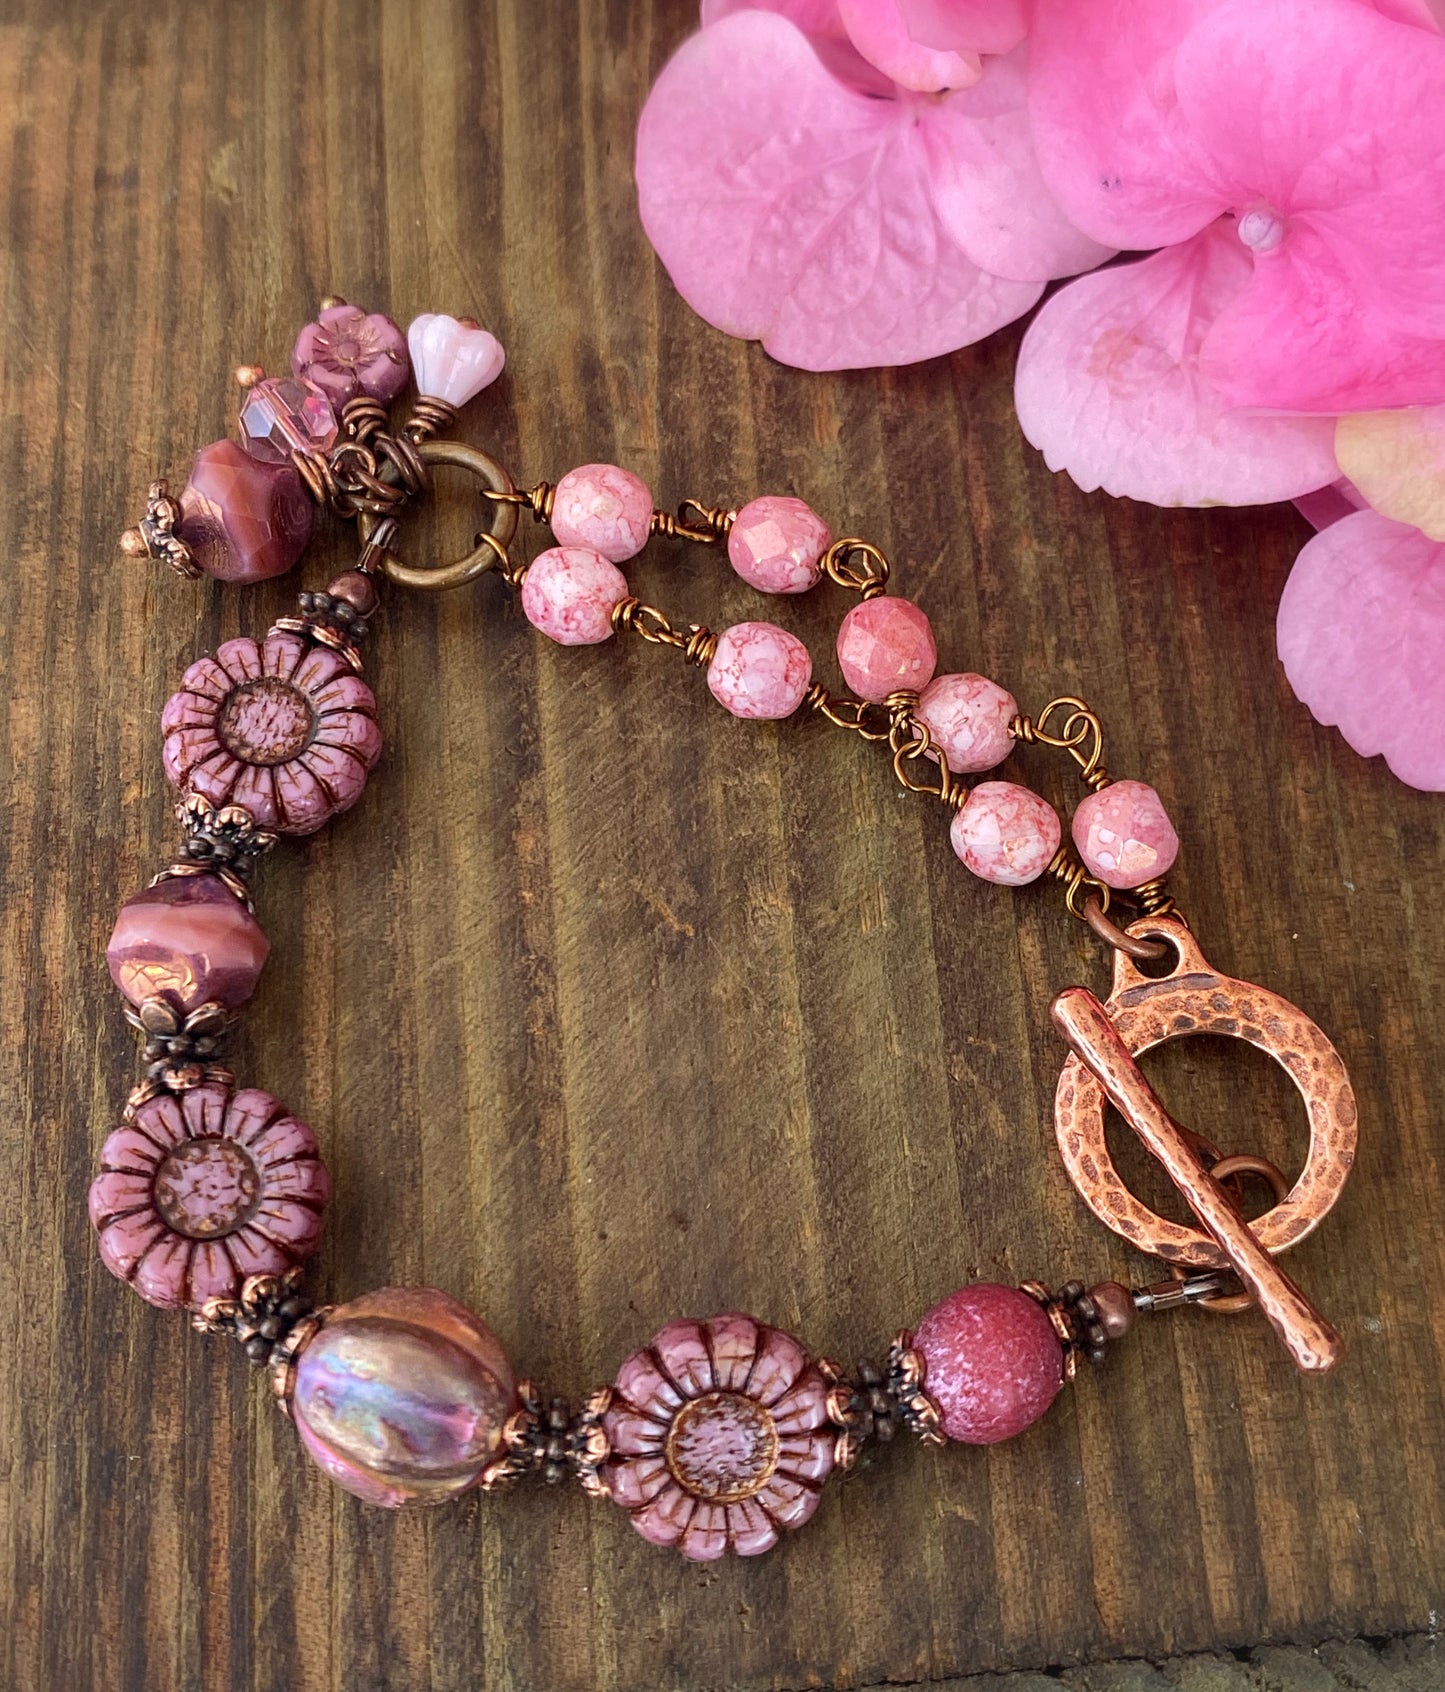 Pink flower Czech glass, copper metal, bracelet, jewelry